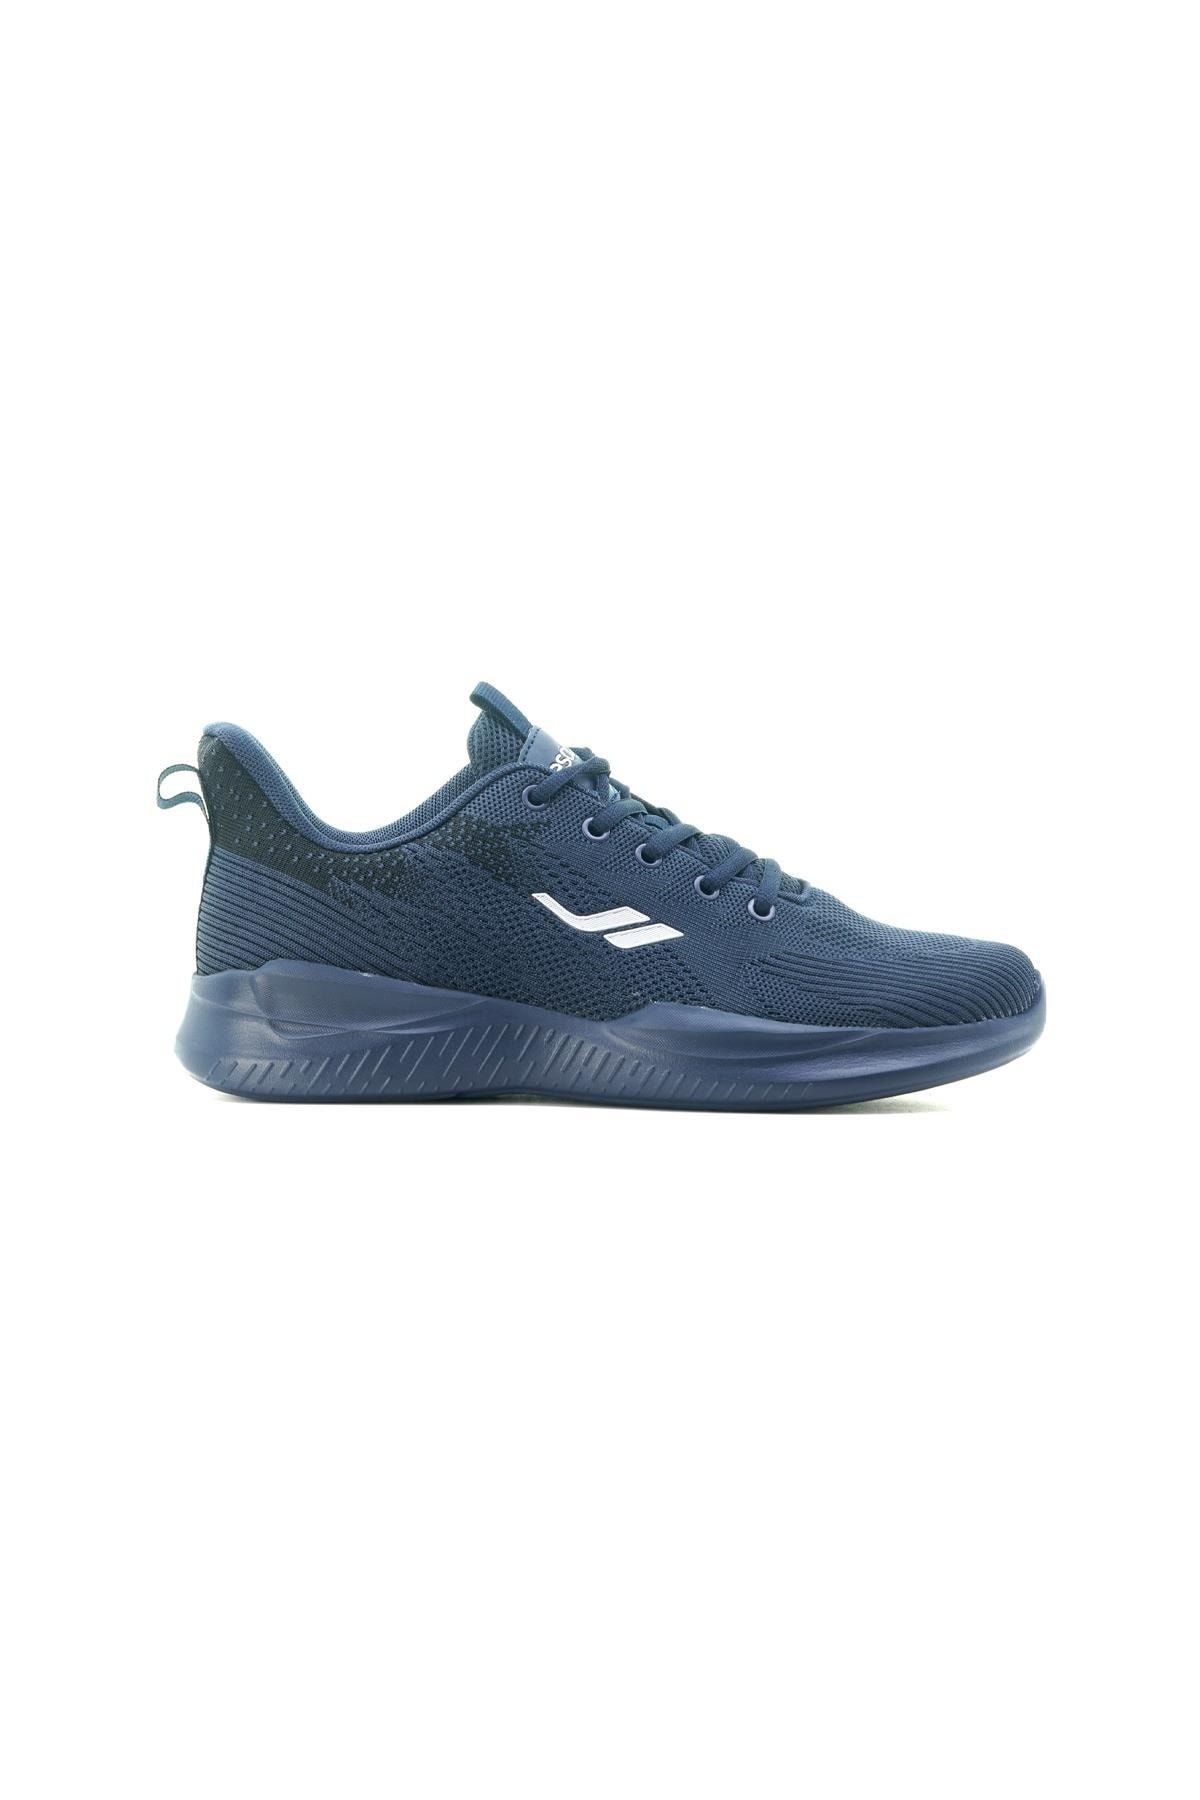 Lescon Hellıum Etna-2 Erkek Sneaker Spor Ayakkabı (40-45) 23y Hellıum Etna-2 M